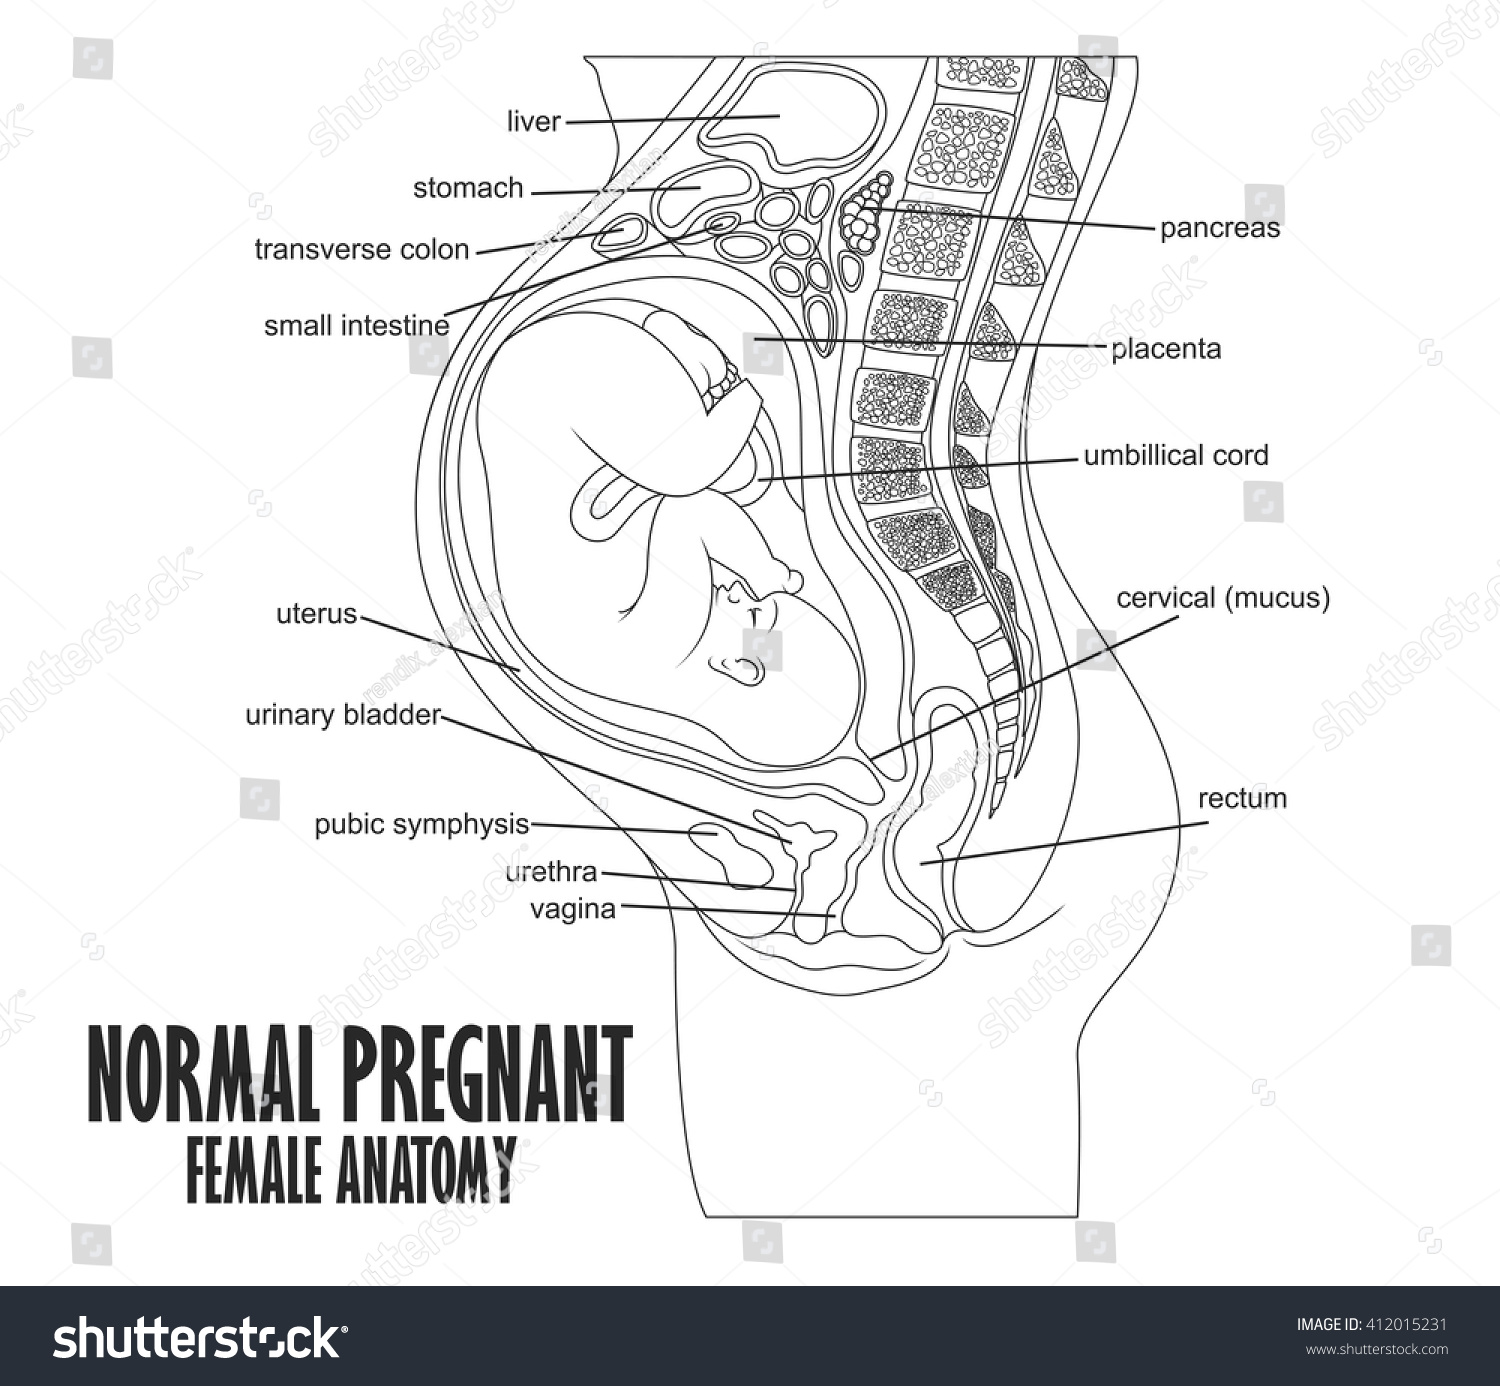 Анатомия беременной женщины в картинках